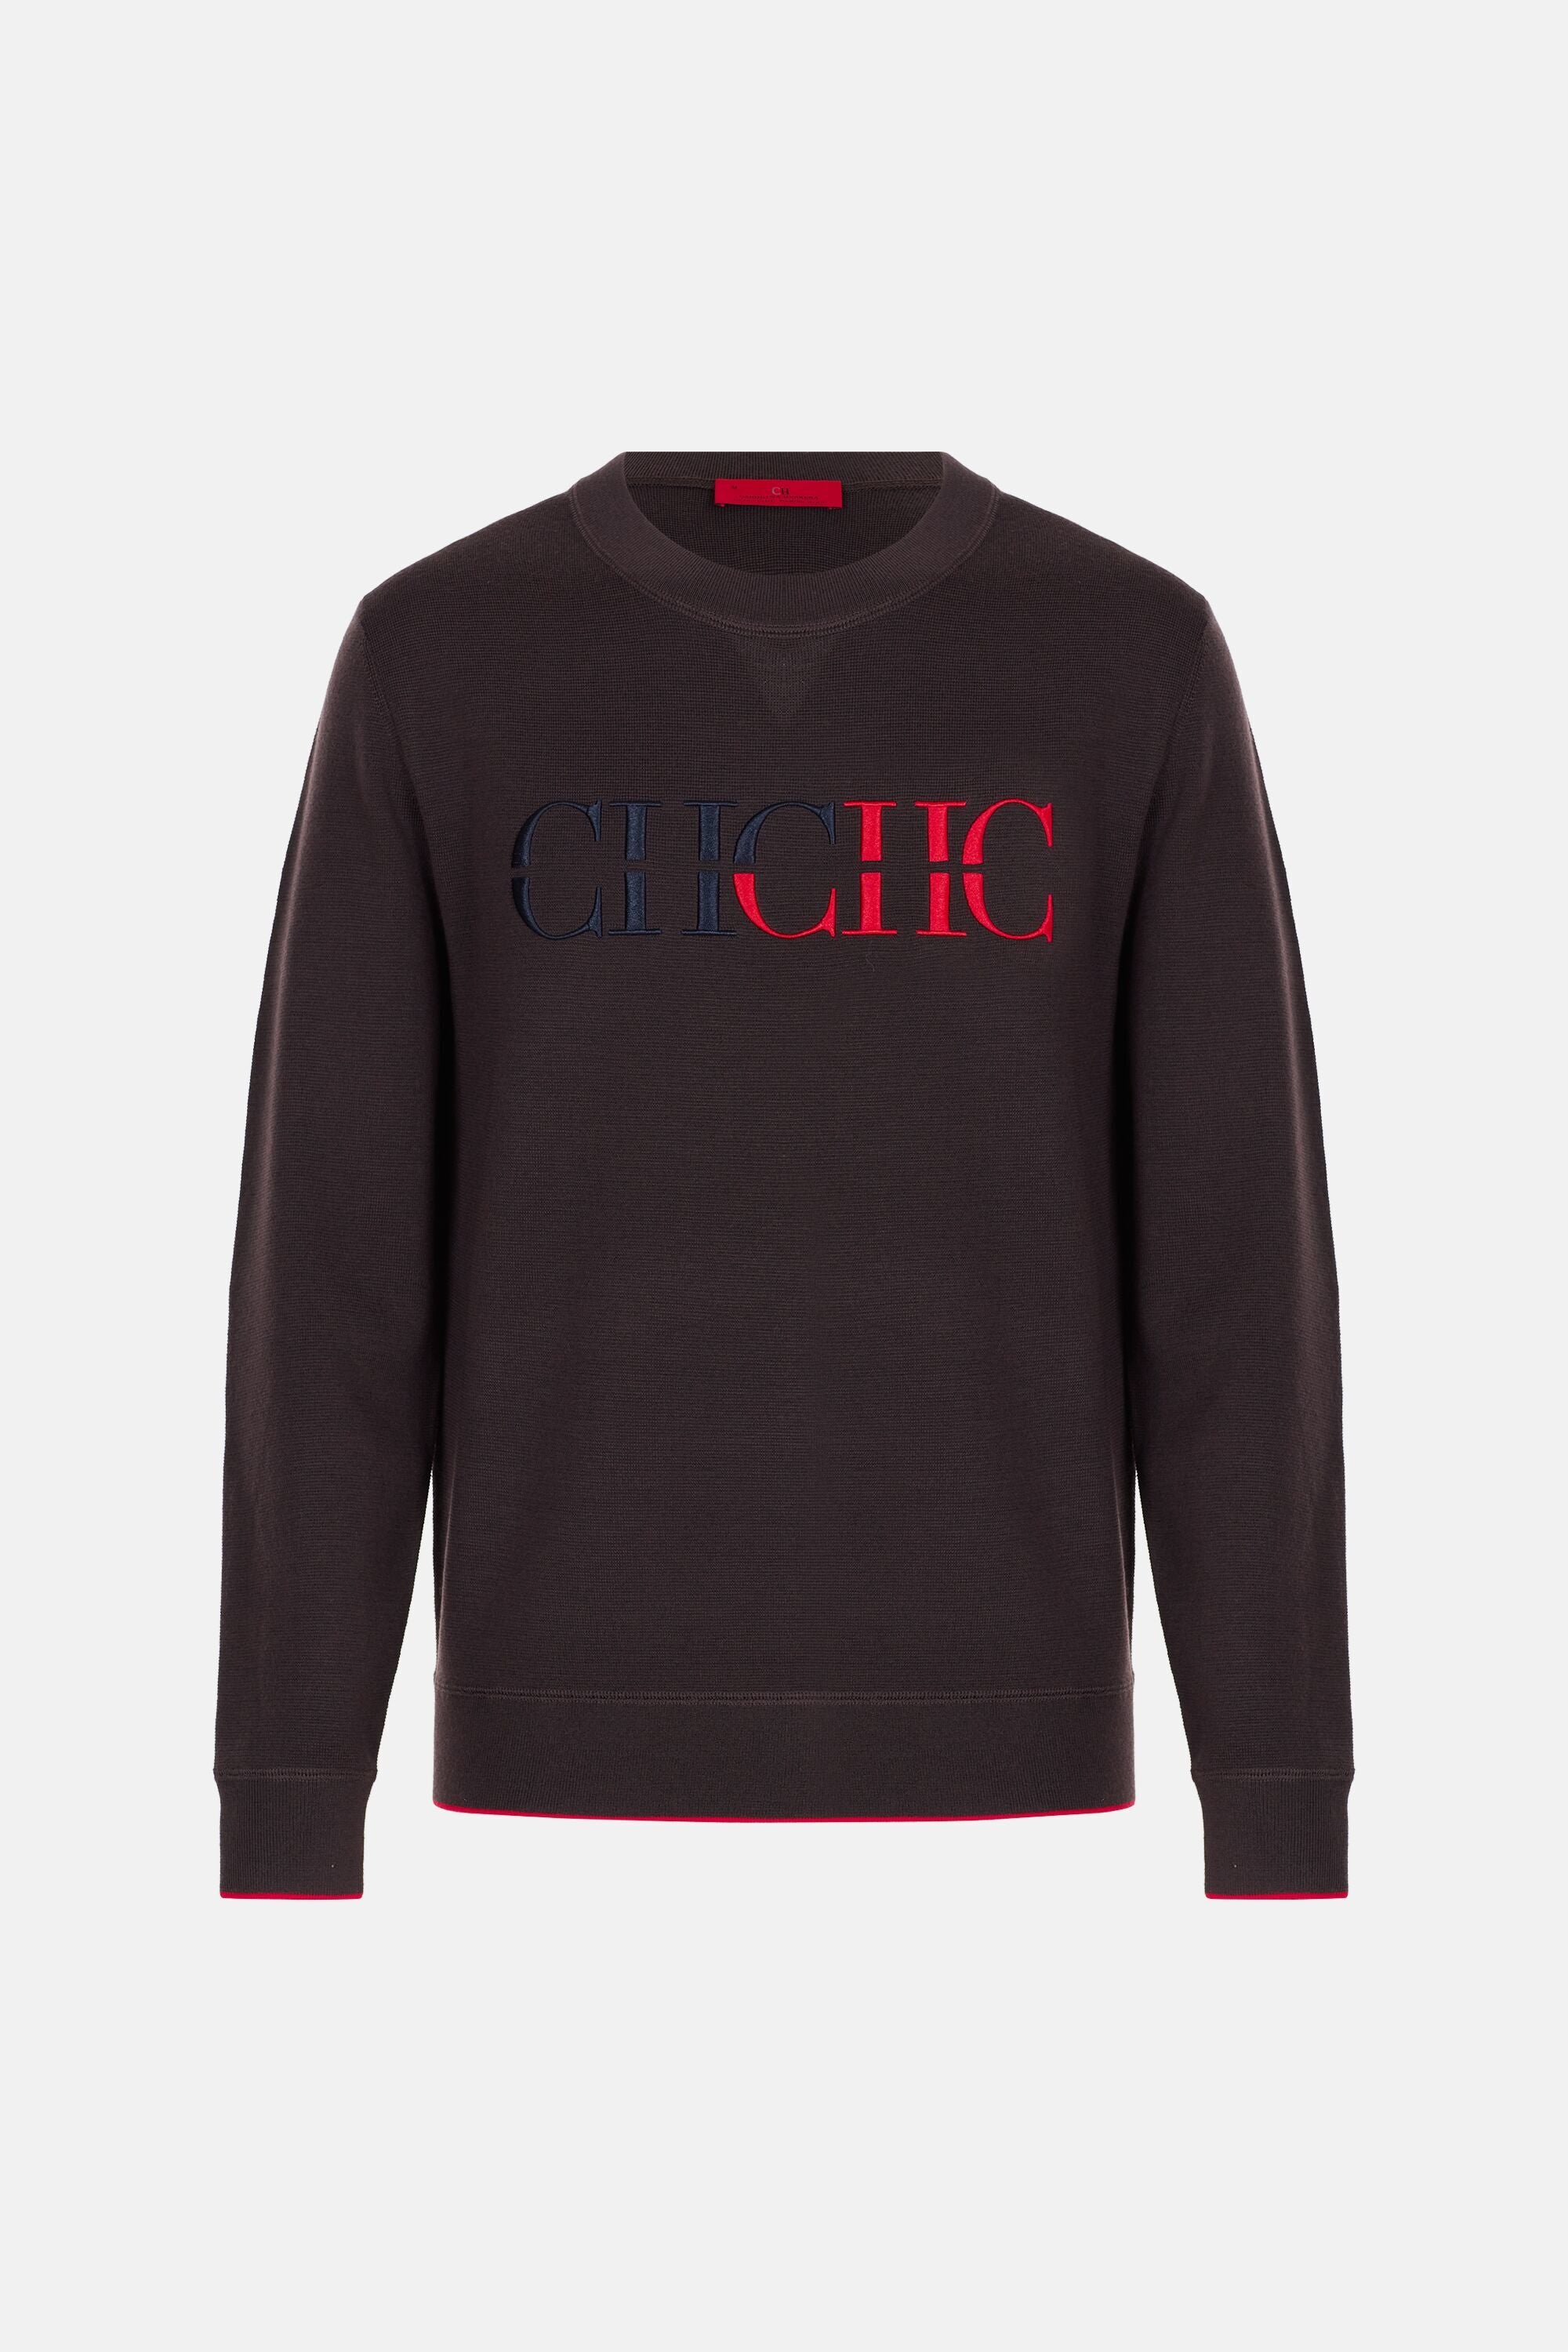 CH 2020 cotton jacquard sweater brown/ecru - CH Carolina Herrera